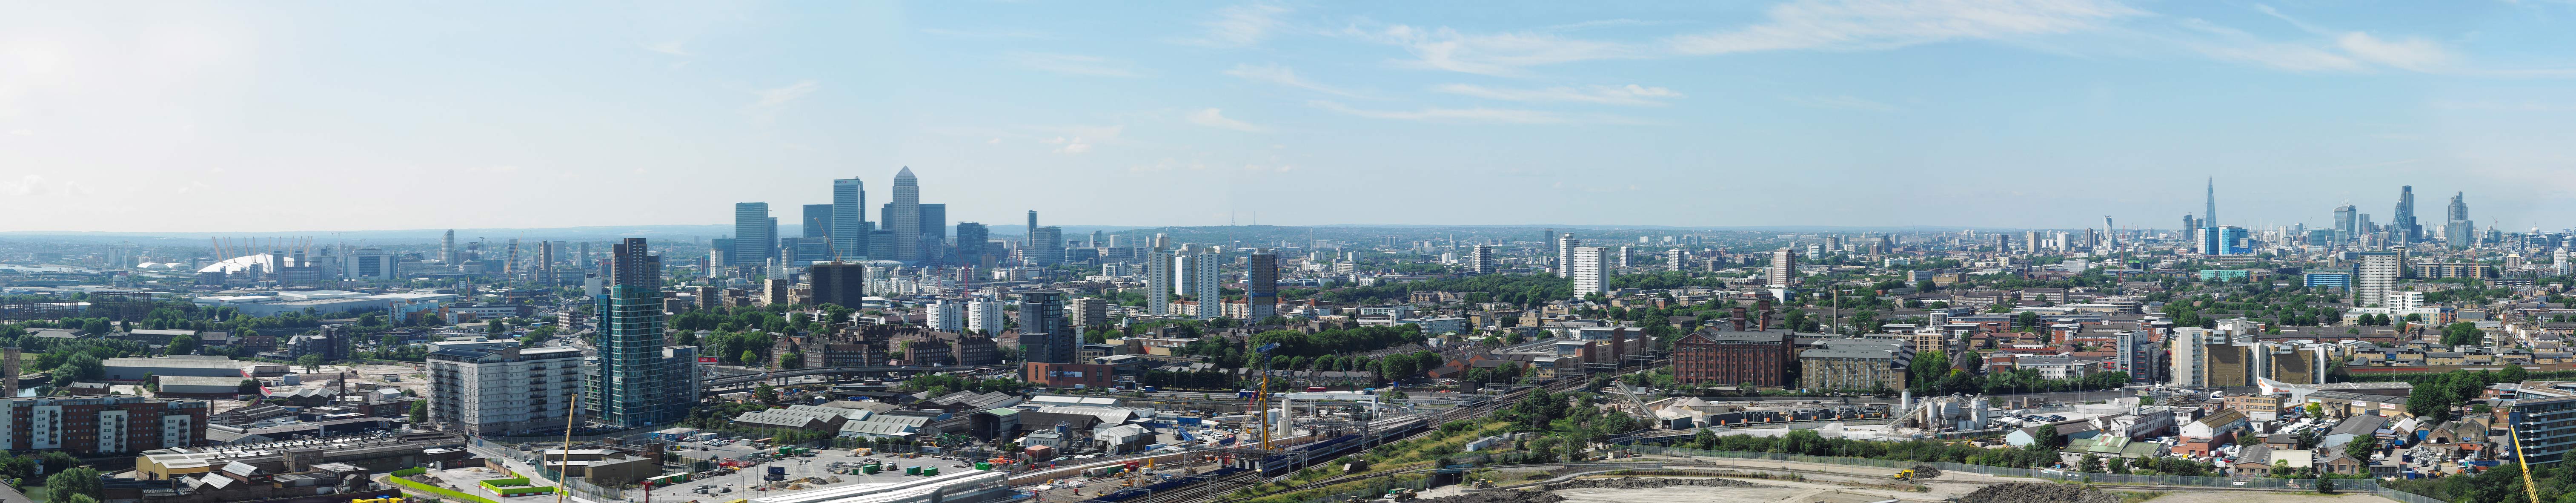 Panorama-London